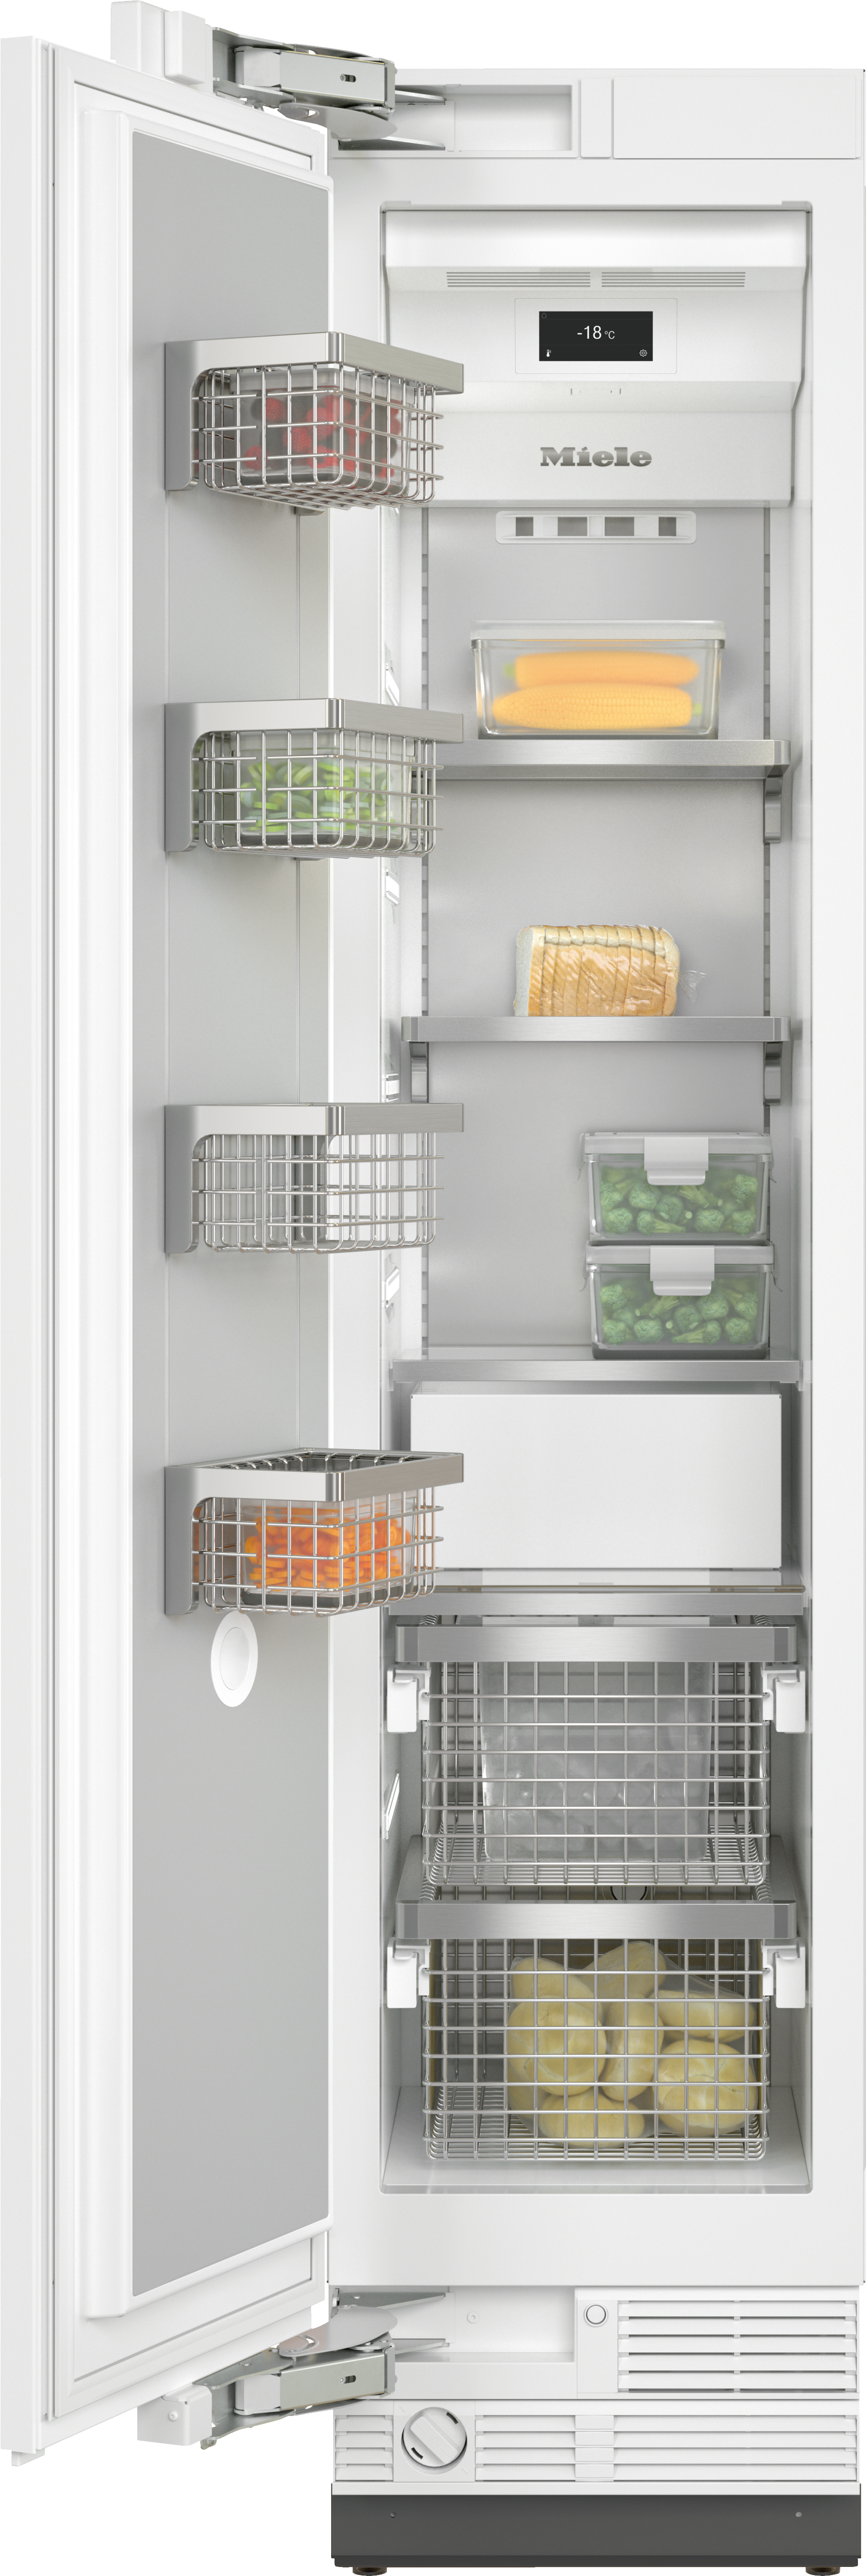 Réfrigérateurs/congélateurs - F 2413 Vi - 1